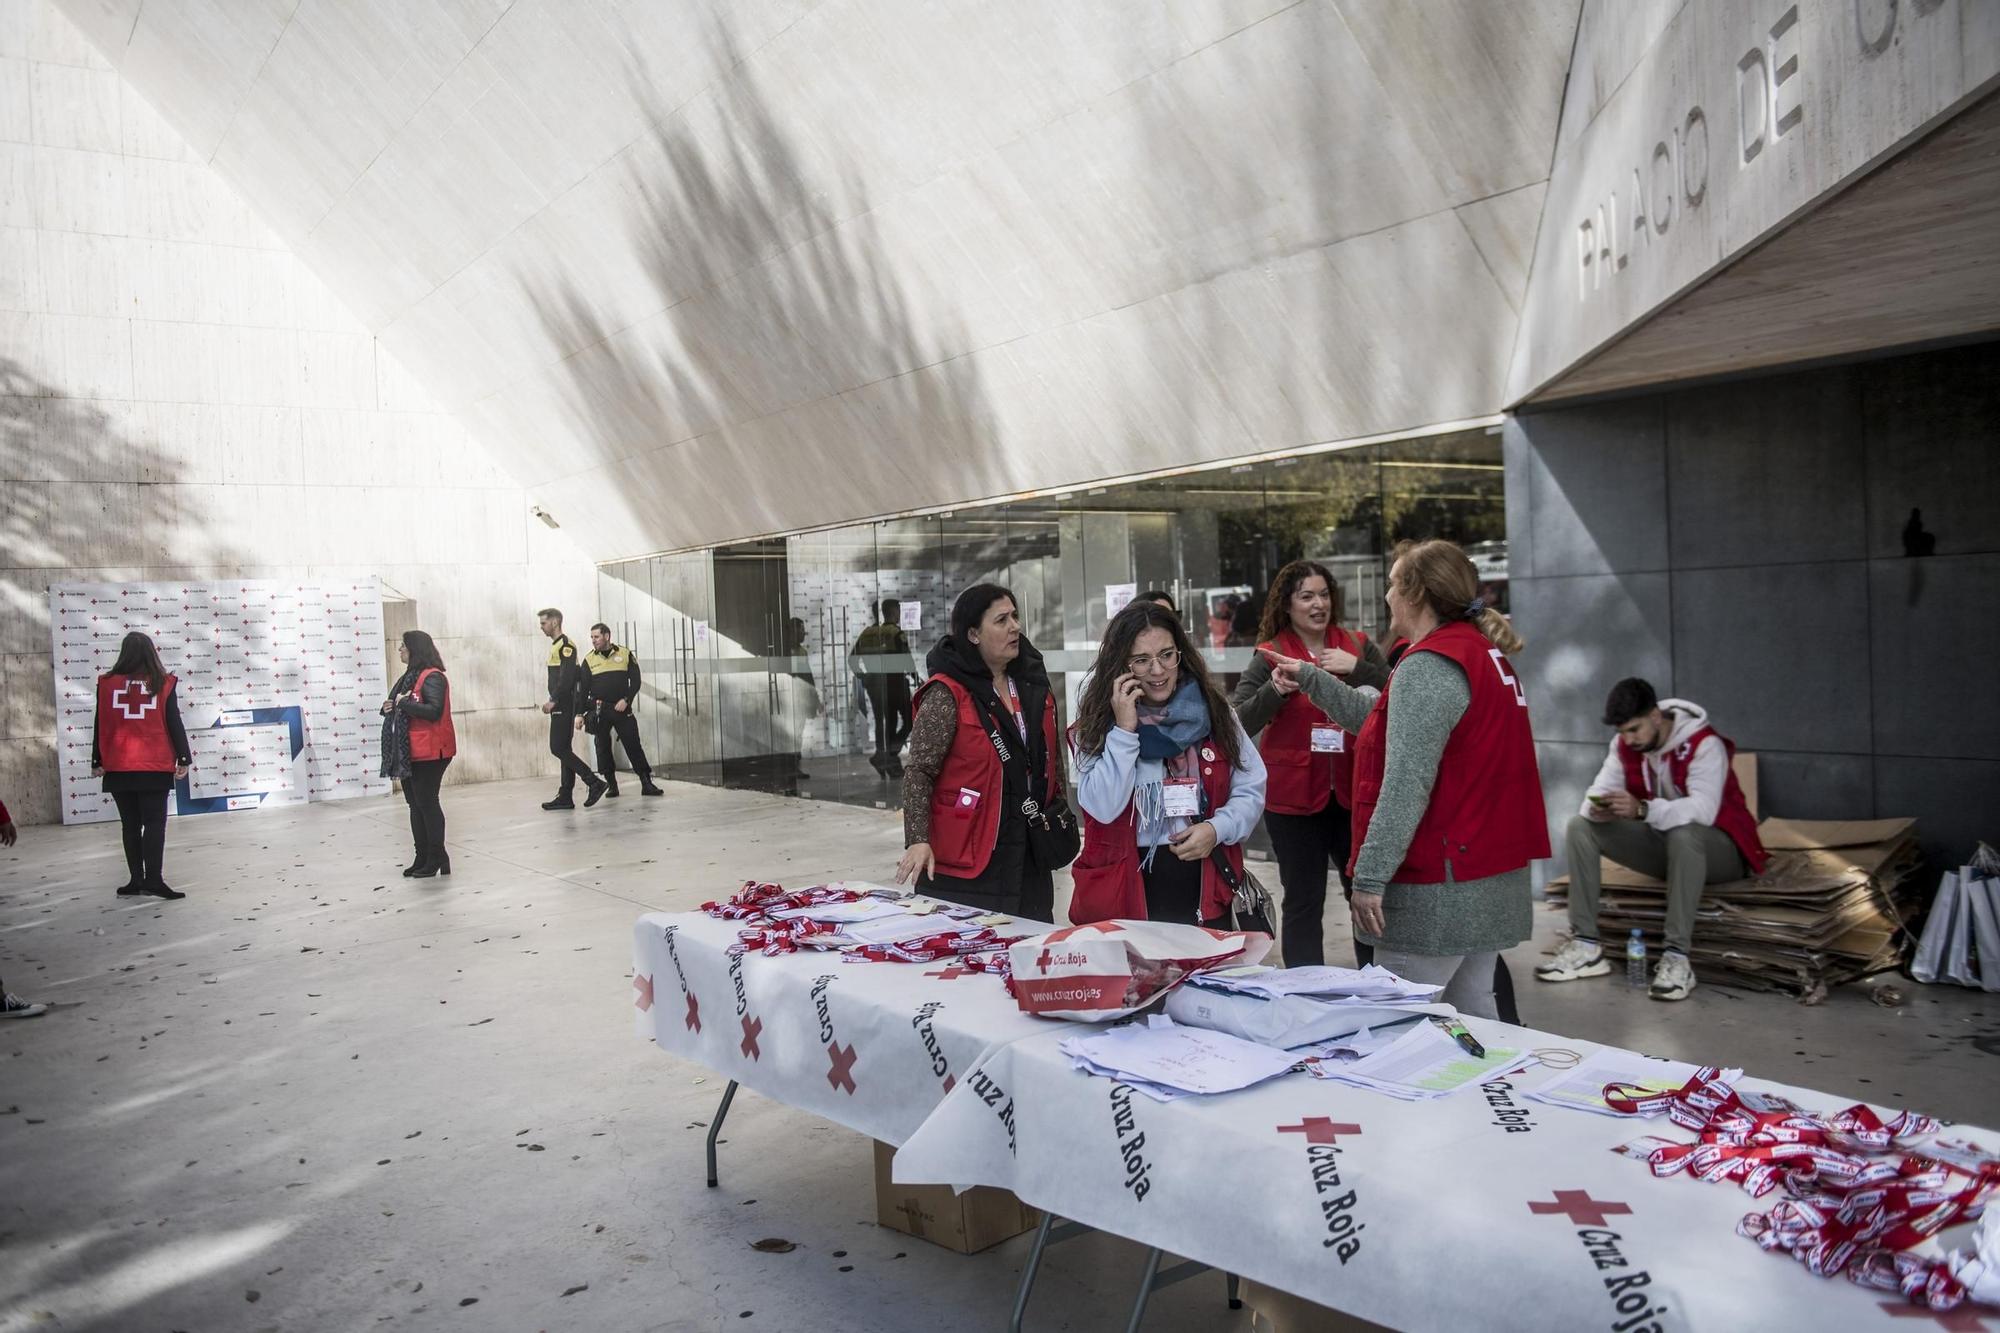 GALERÍA | Así fue el Día del Voluntariado en el Palacio de Congresos de Cáceres